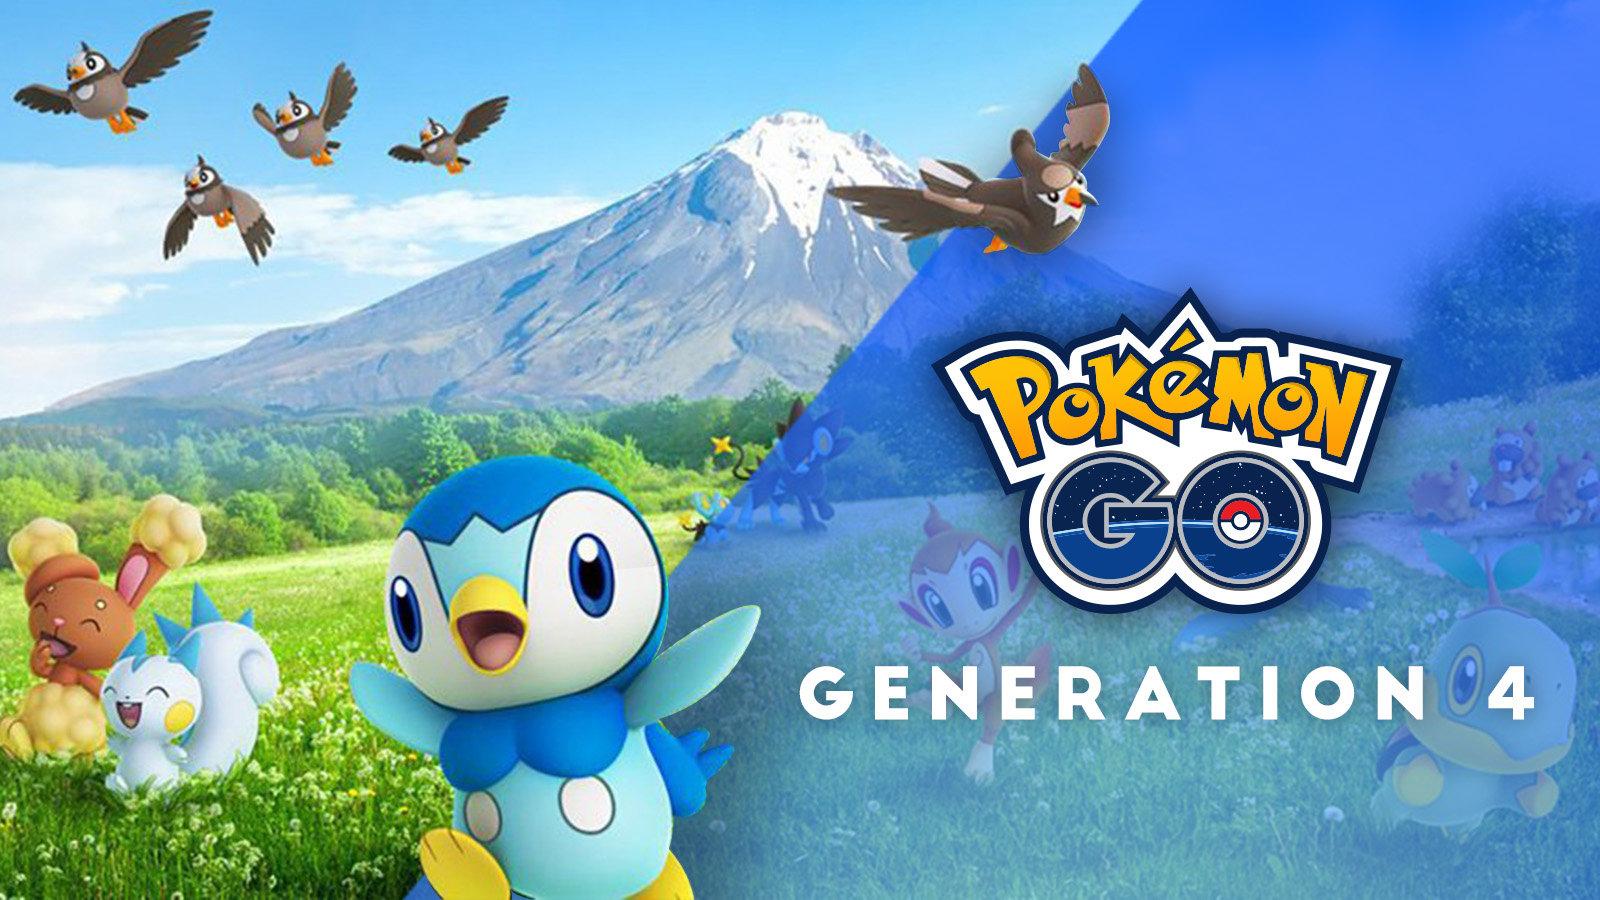 Gen 4 species yet to be released in Pokemon Go - Dexerto